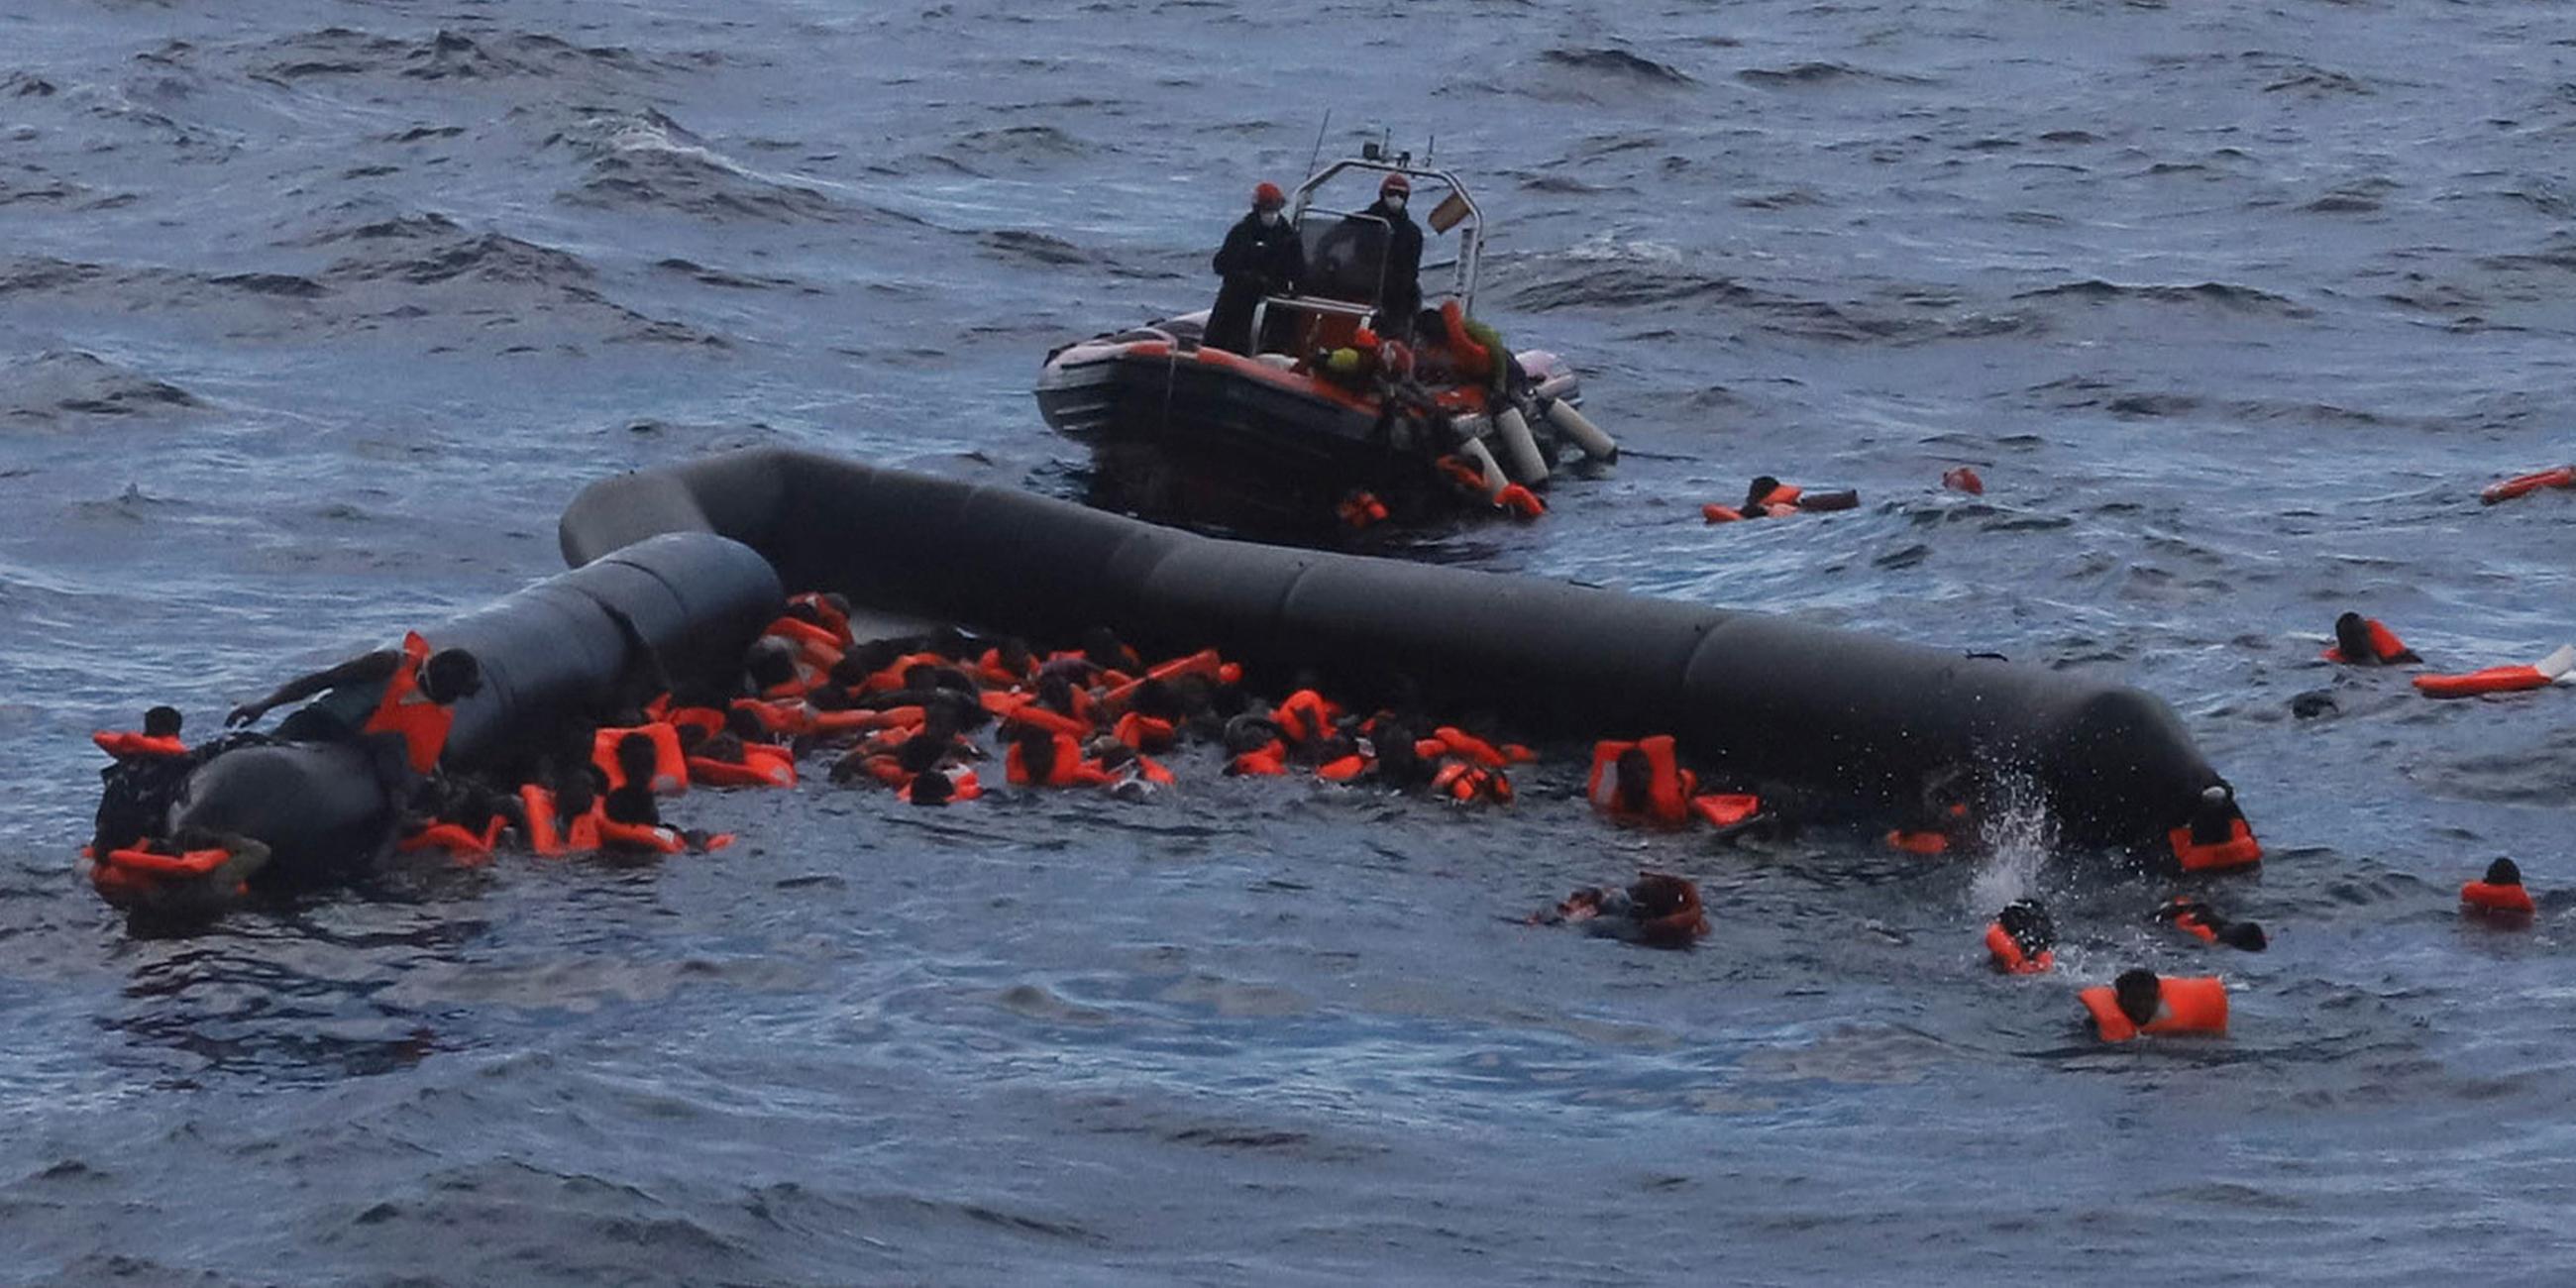 Flüchtlinge werden von Mitgliedern der spanischen Hilfsorganisation Open Arms nach einem Bootsunglück gerettet.